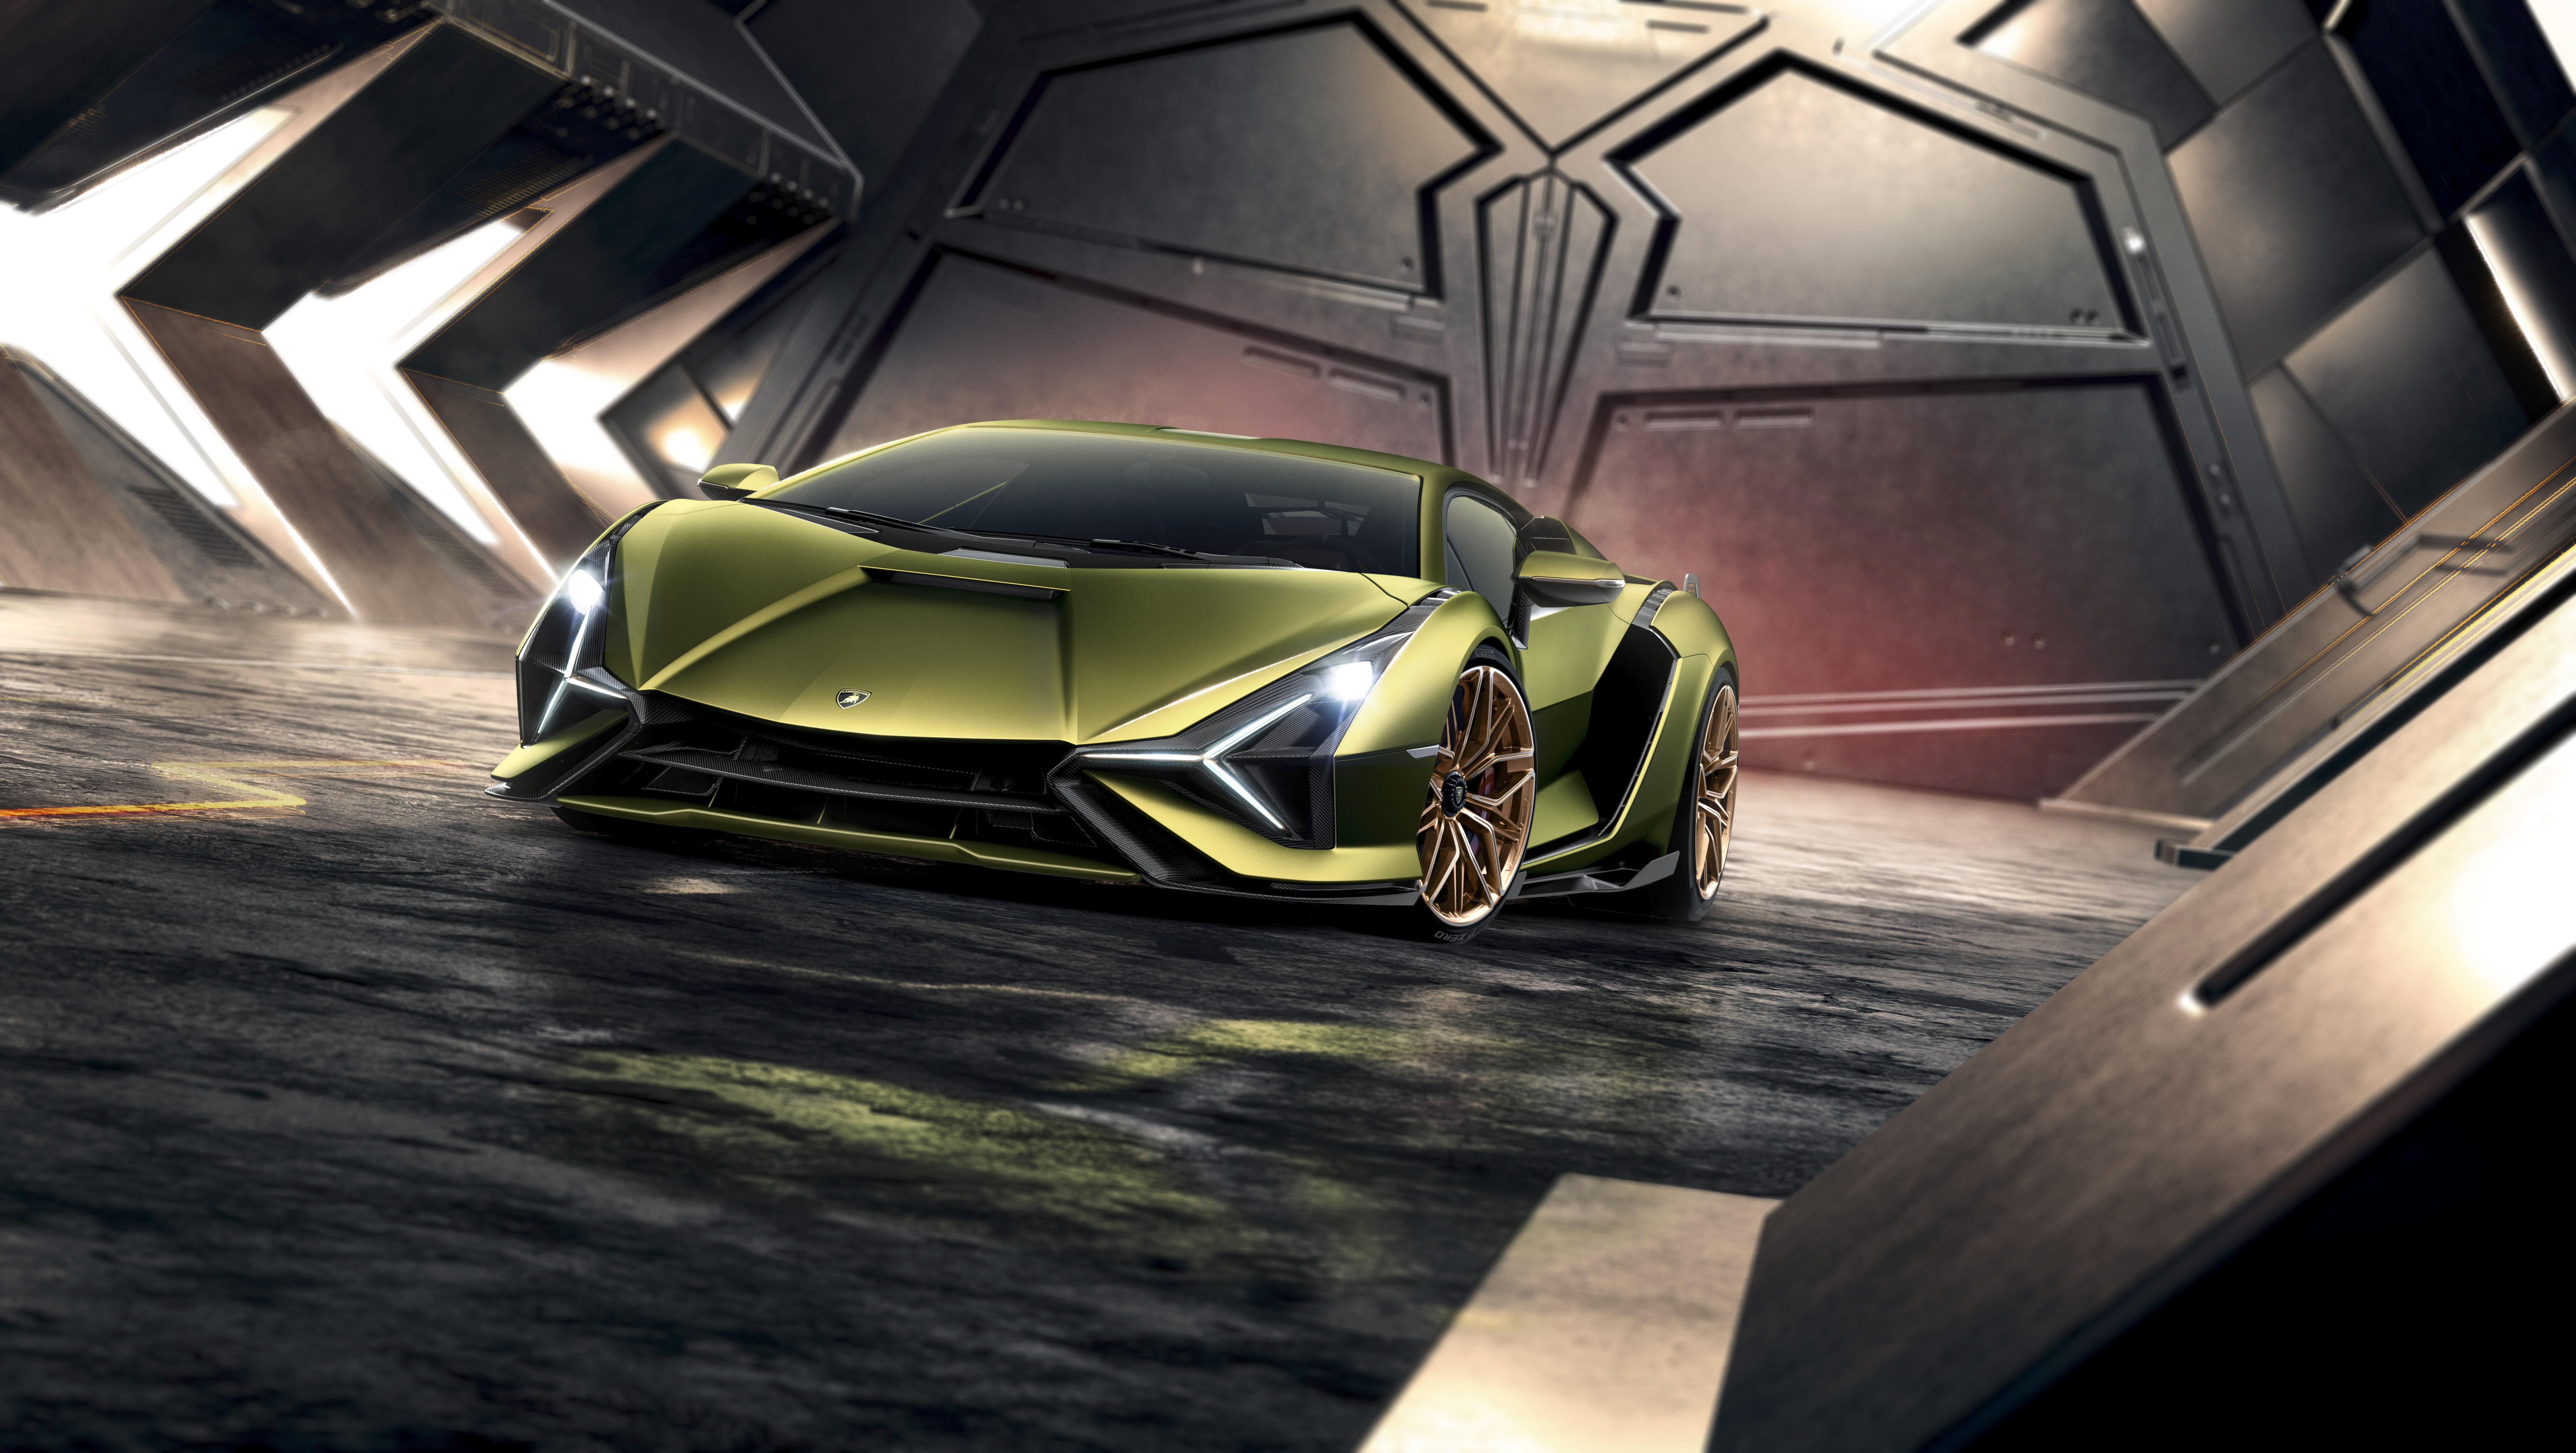 Lamborghini Sian HD Cars, 4k Wallpaper, Image